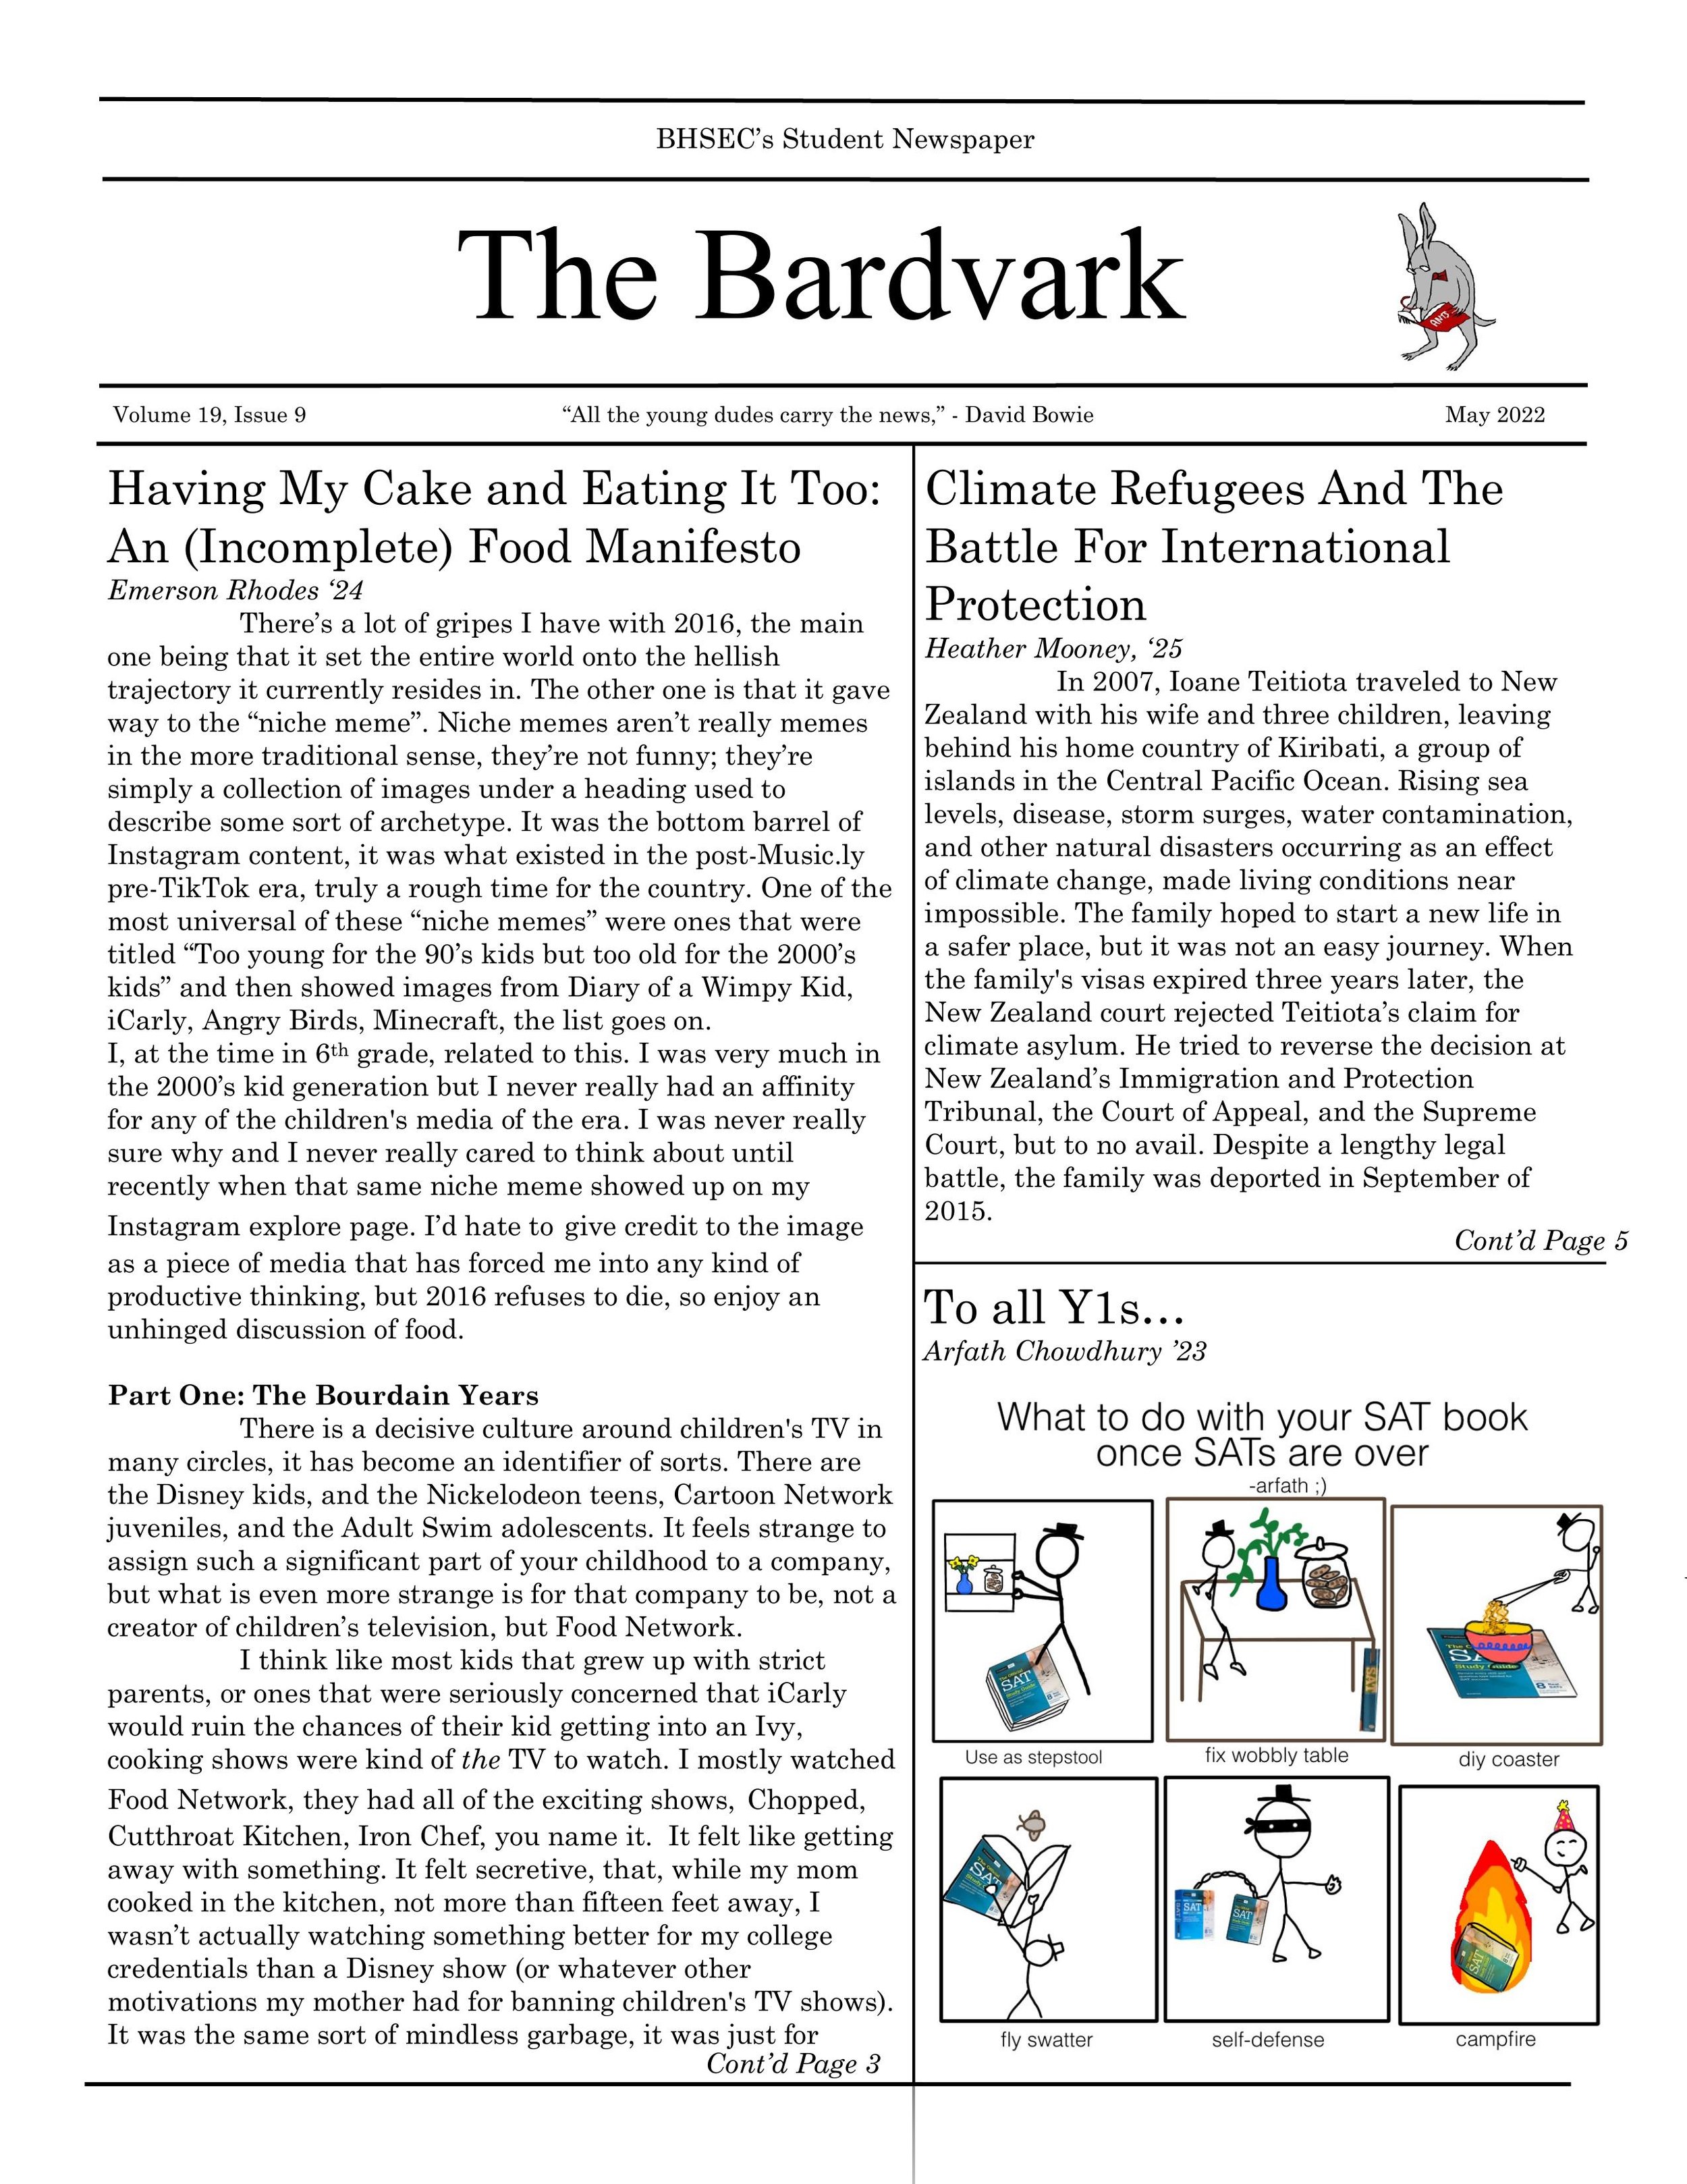 Bardvark_May_Issue_2.5-1[1].jpg